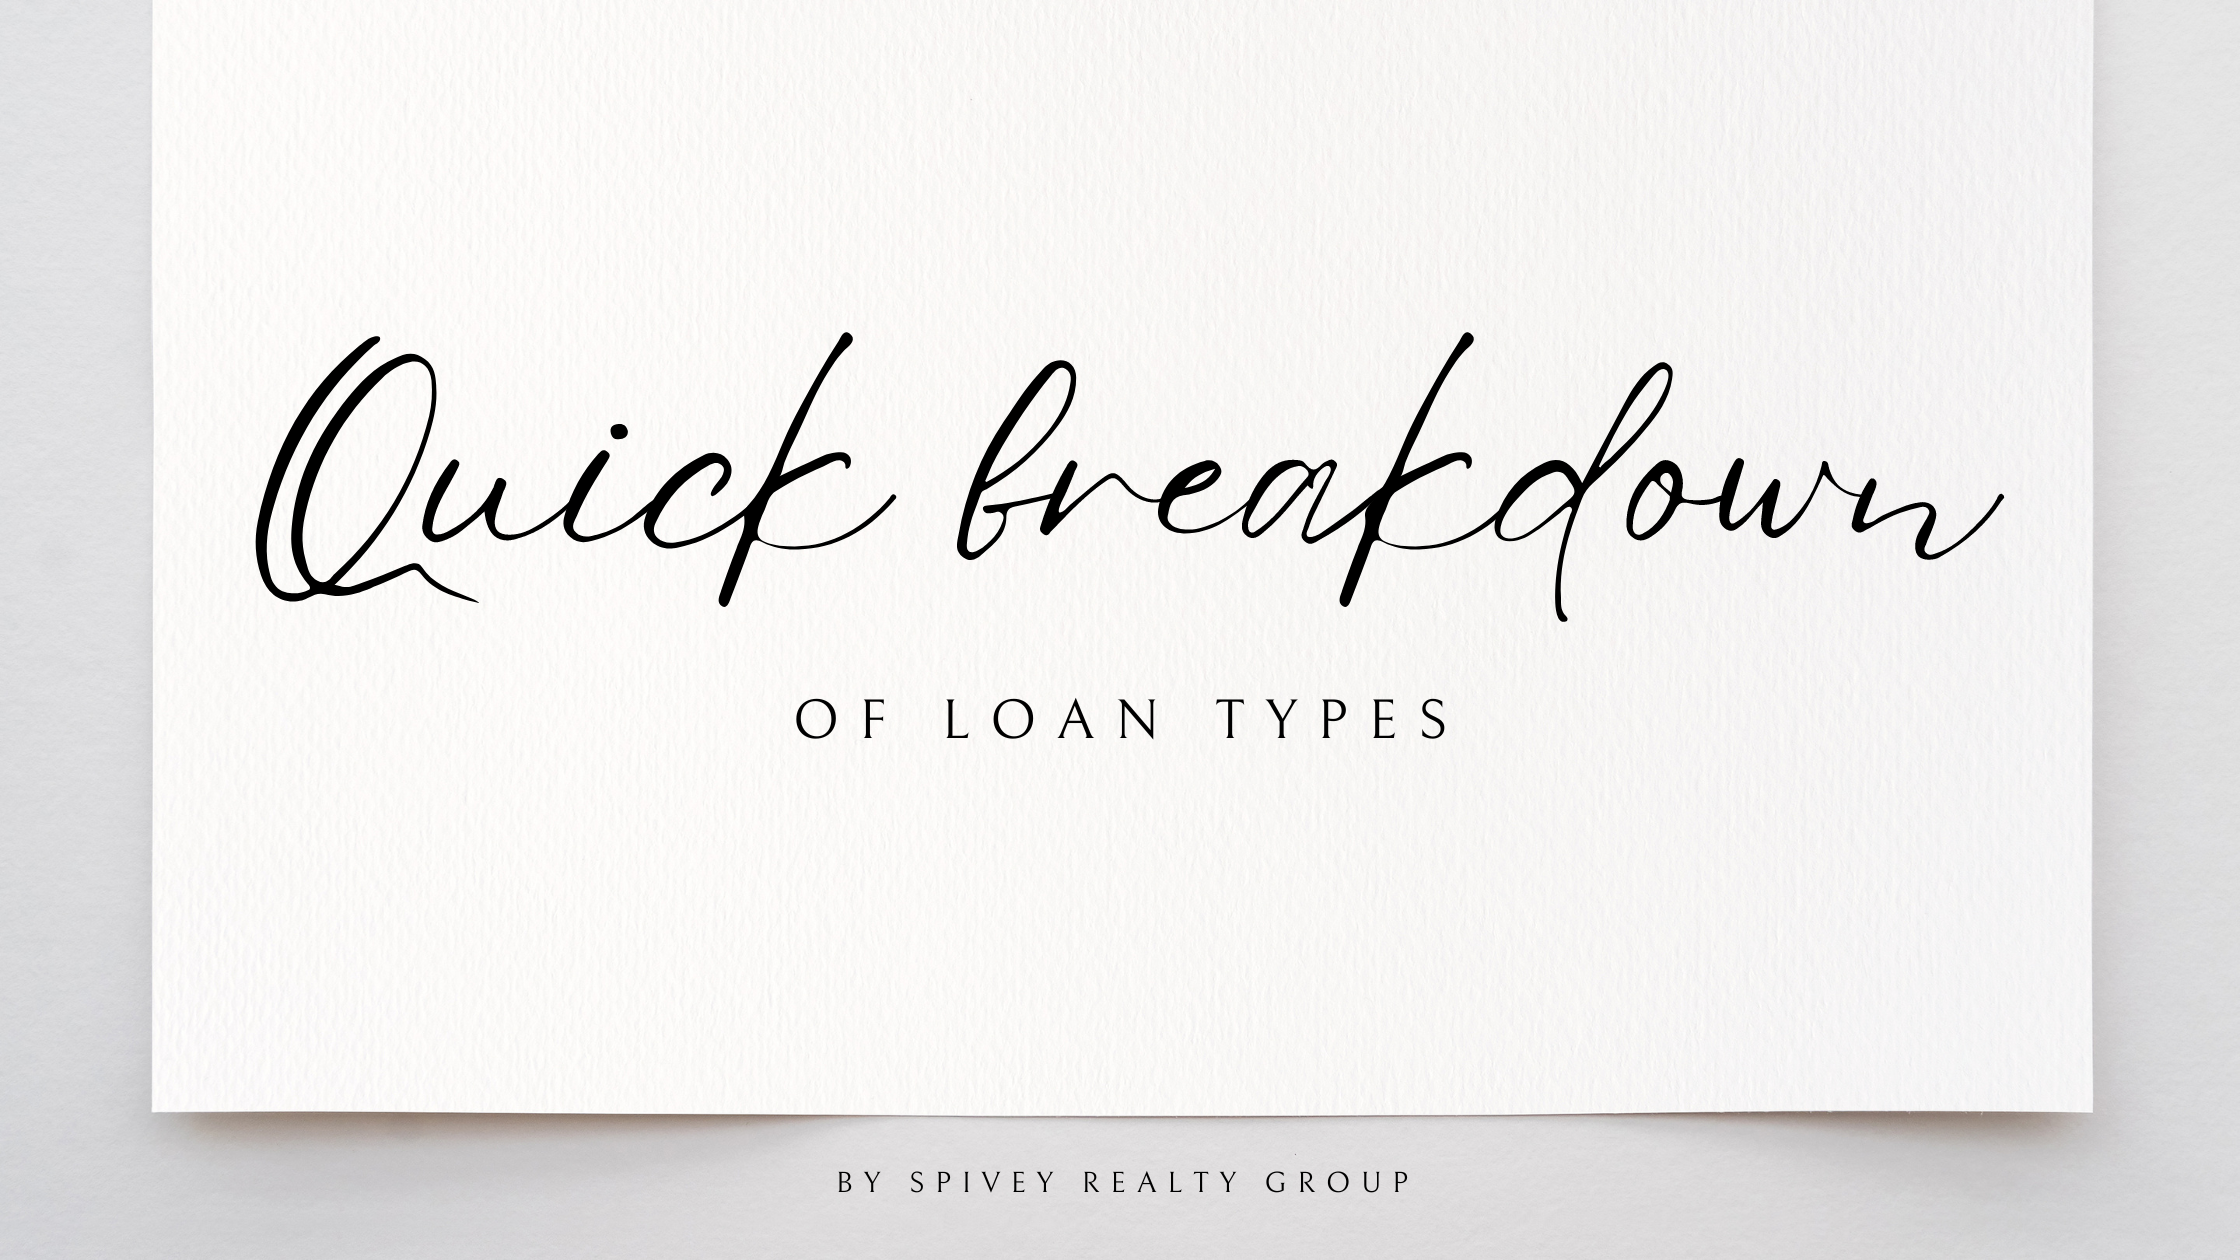 Quick break down on loan types